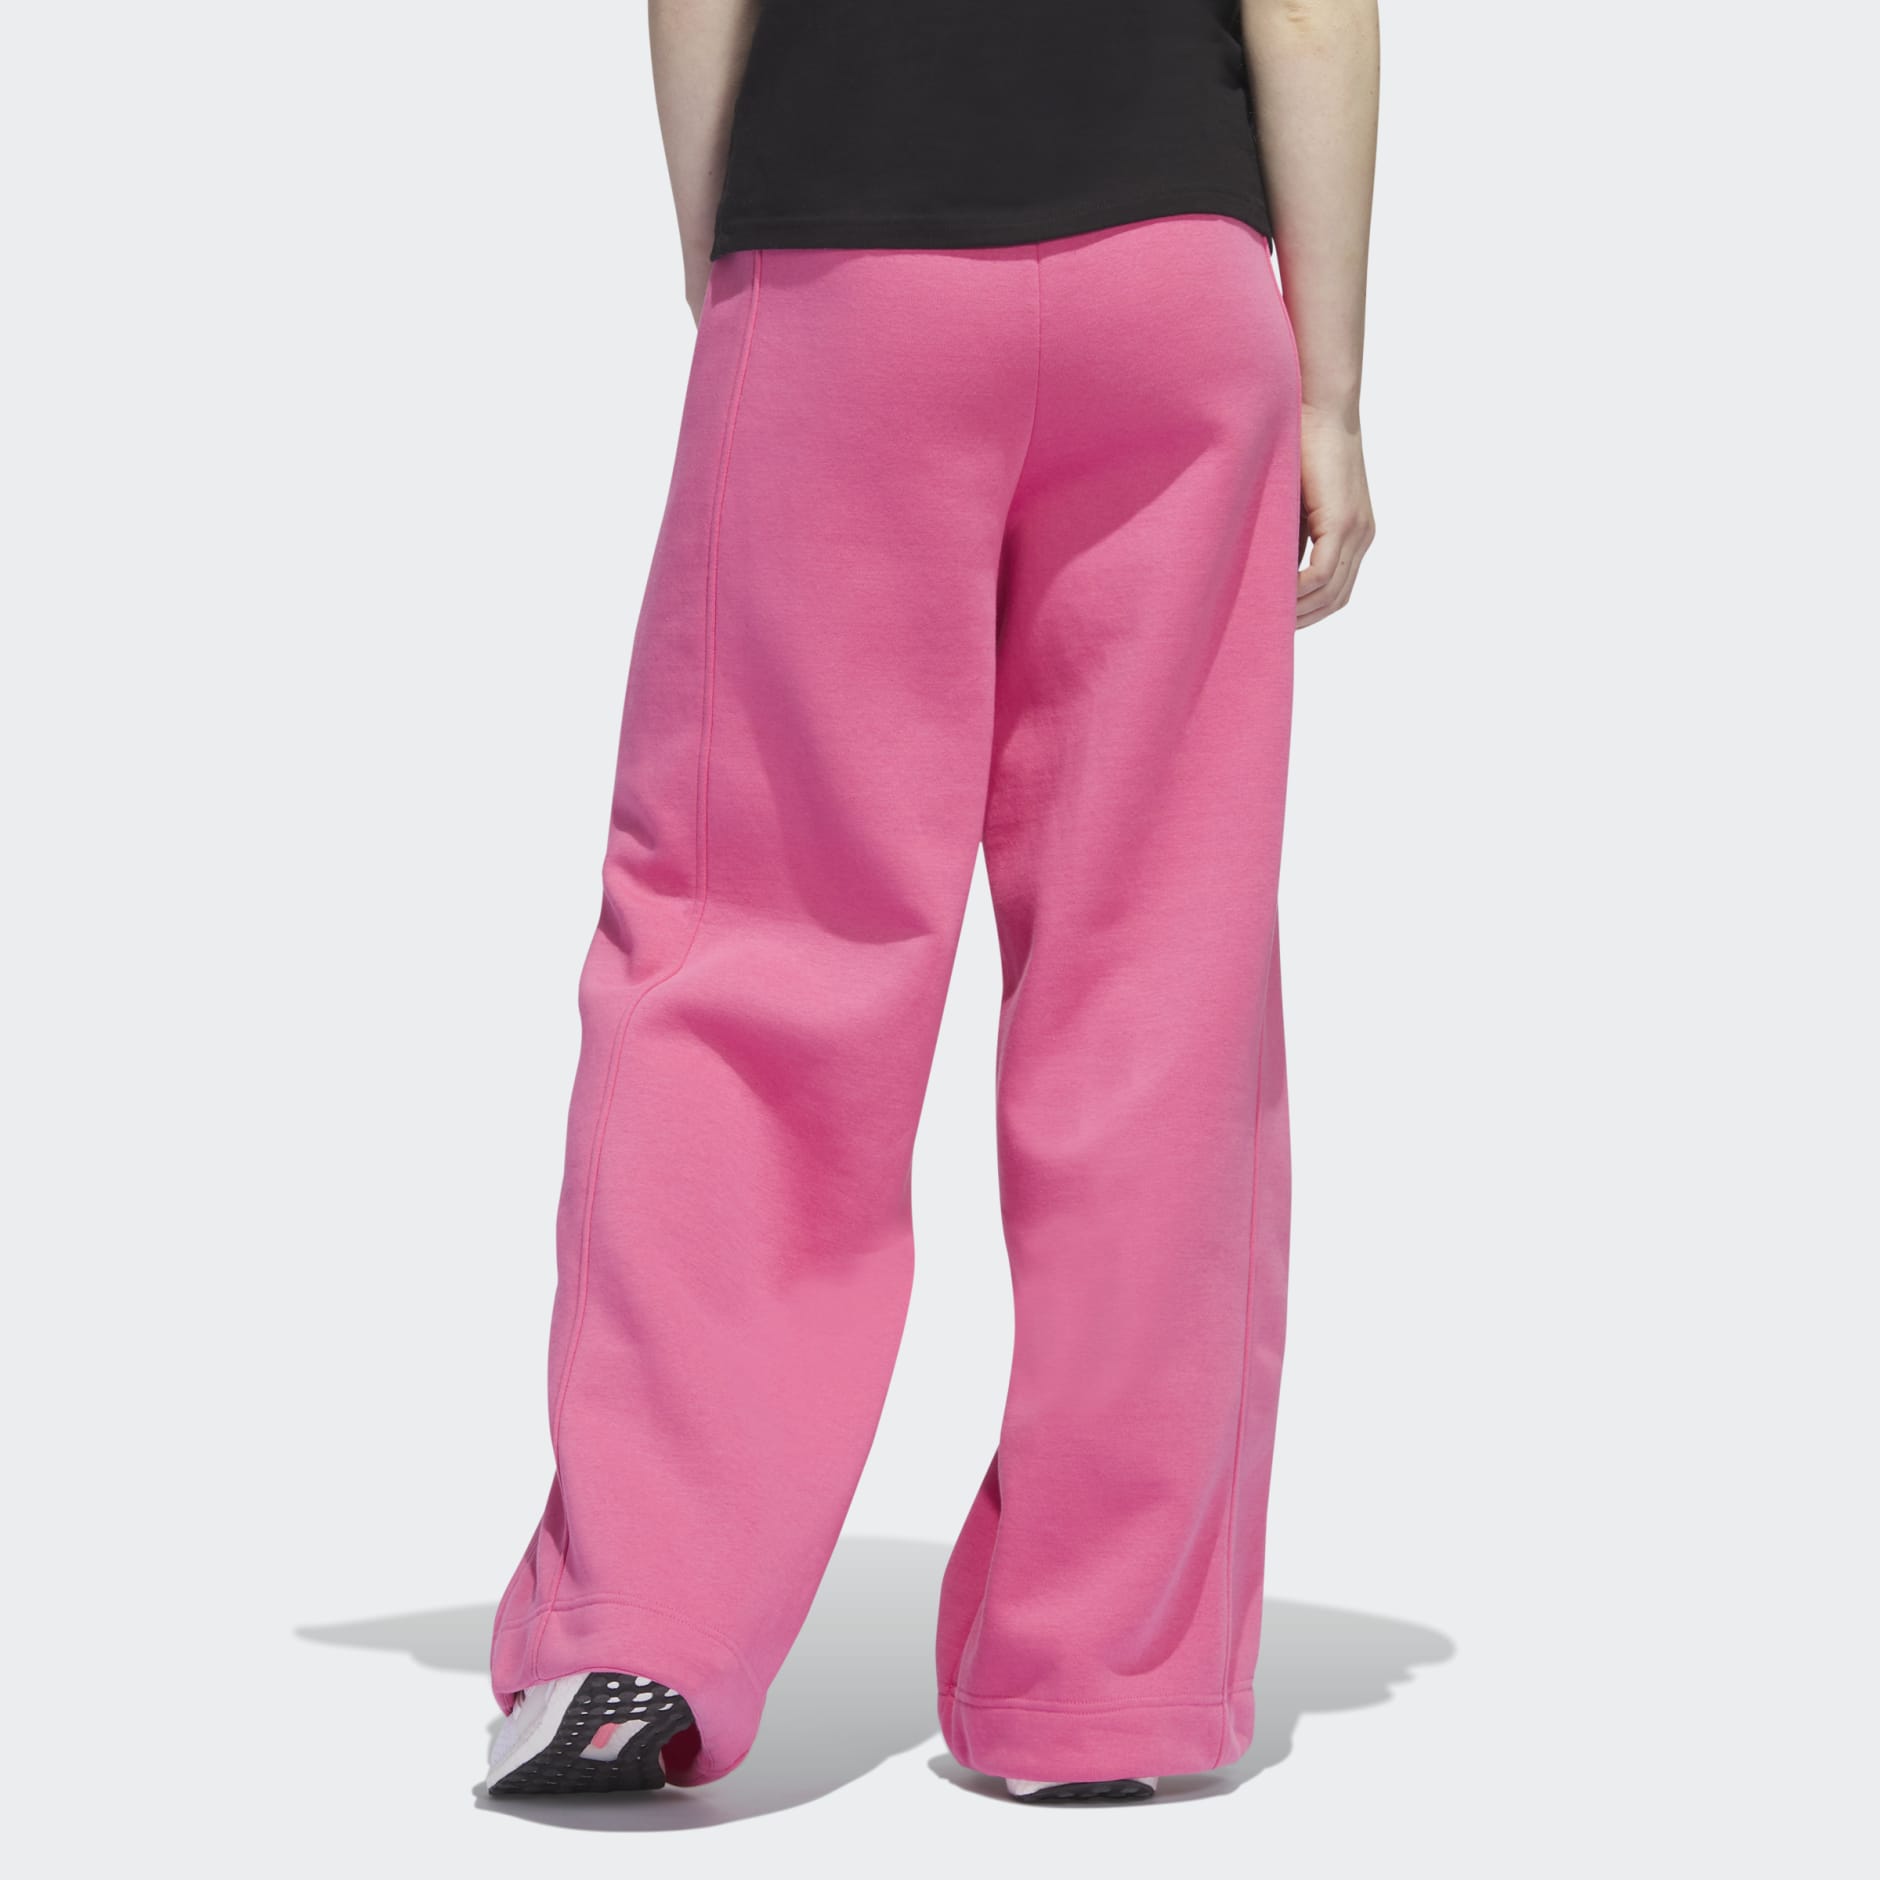 Wide Pants - Dark pink/Pattern - Ladies